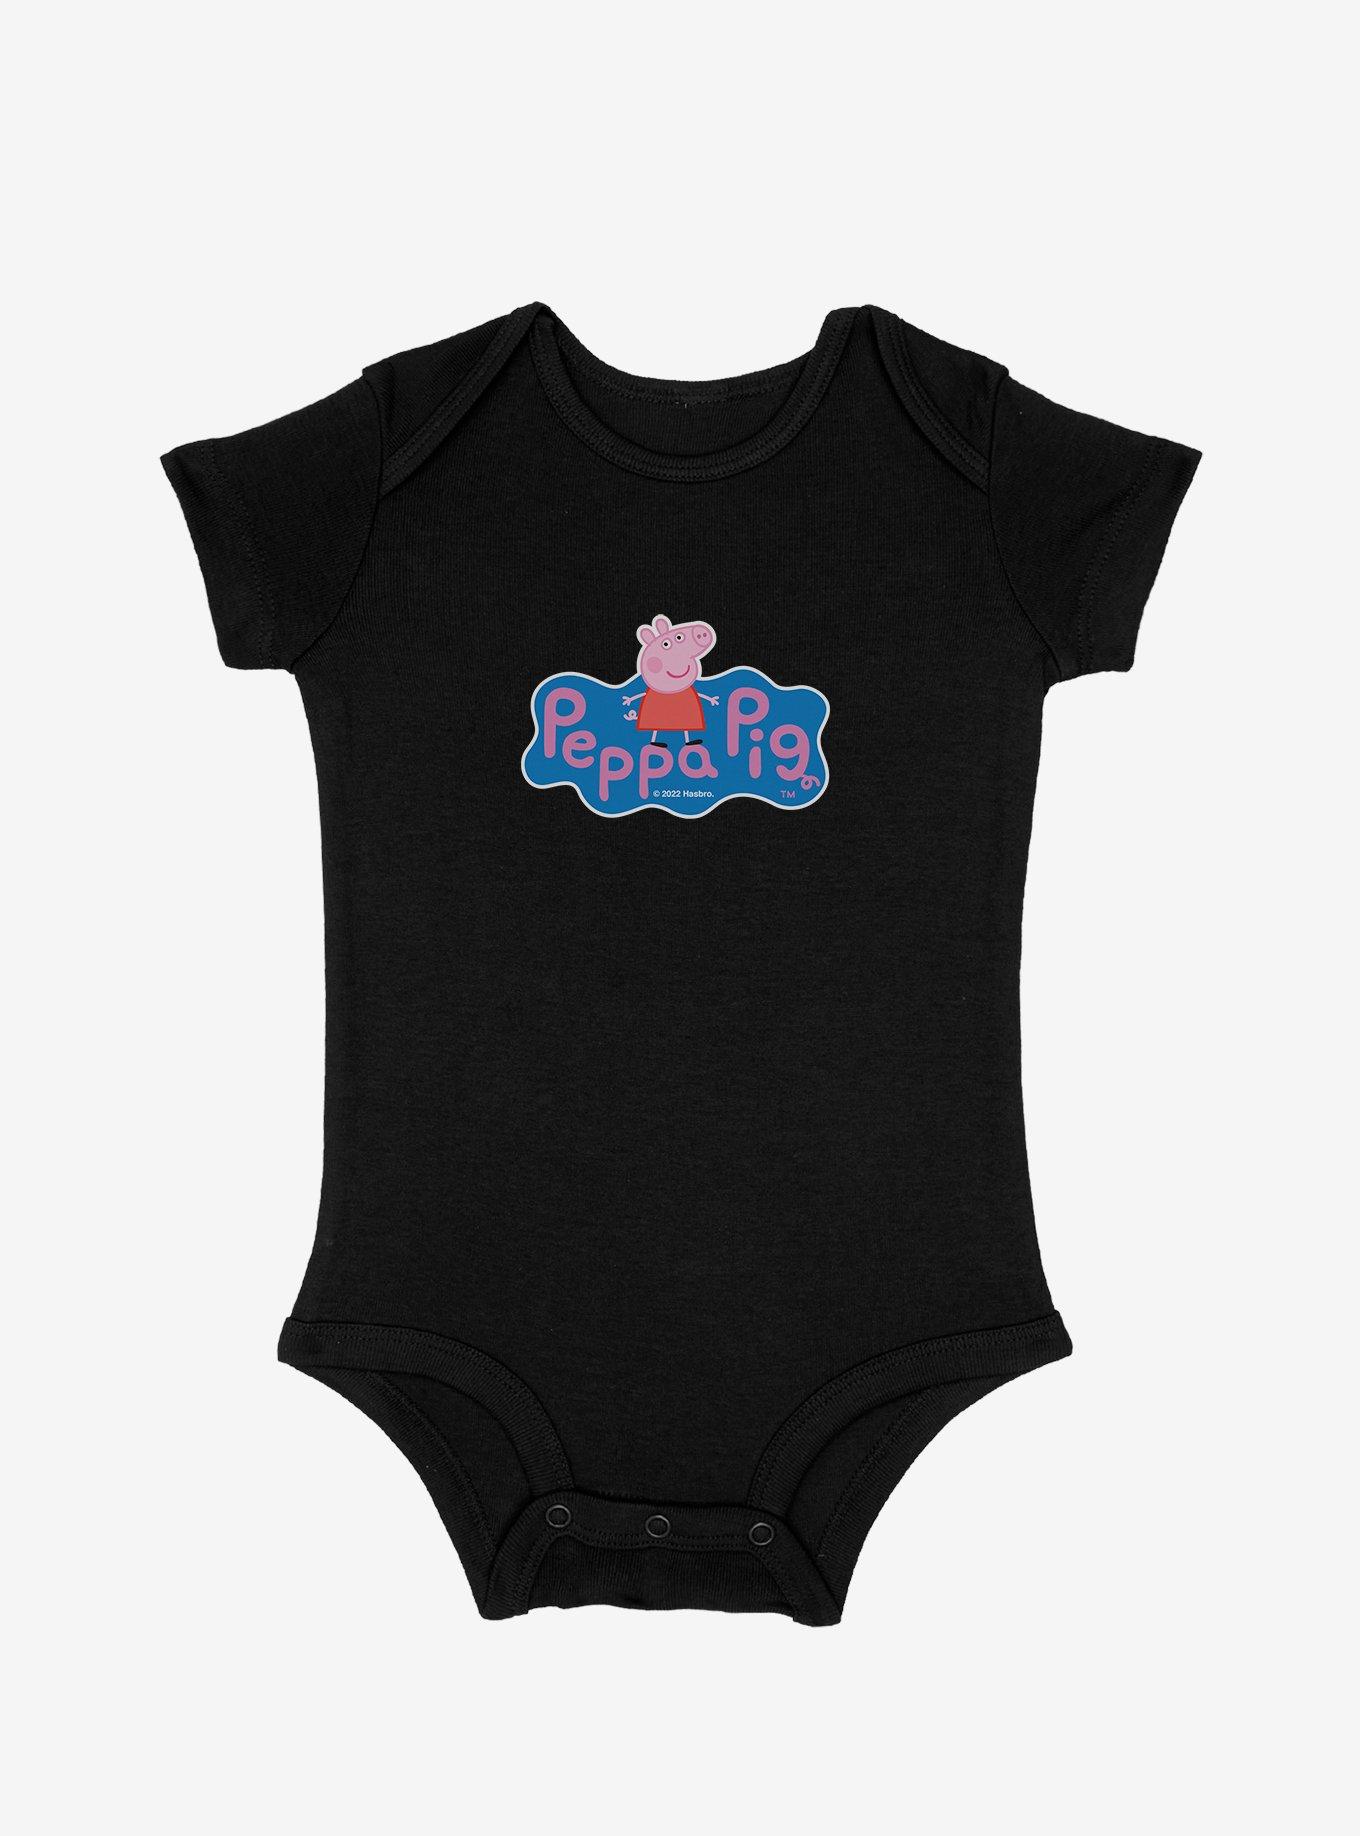 Peppa Pig Portrait Logo Infant Bodysuit, BLACK, hi-res